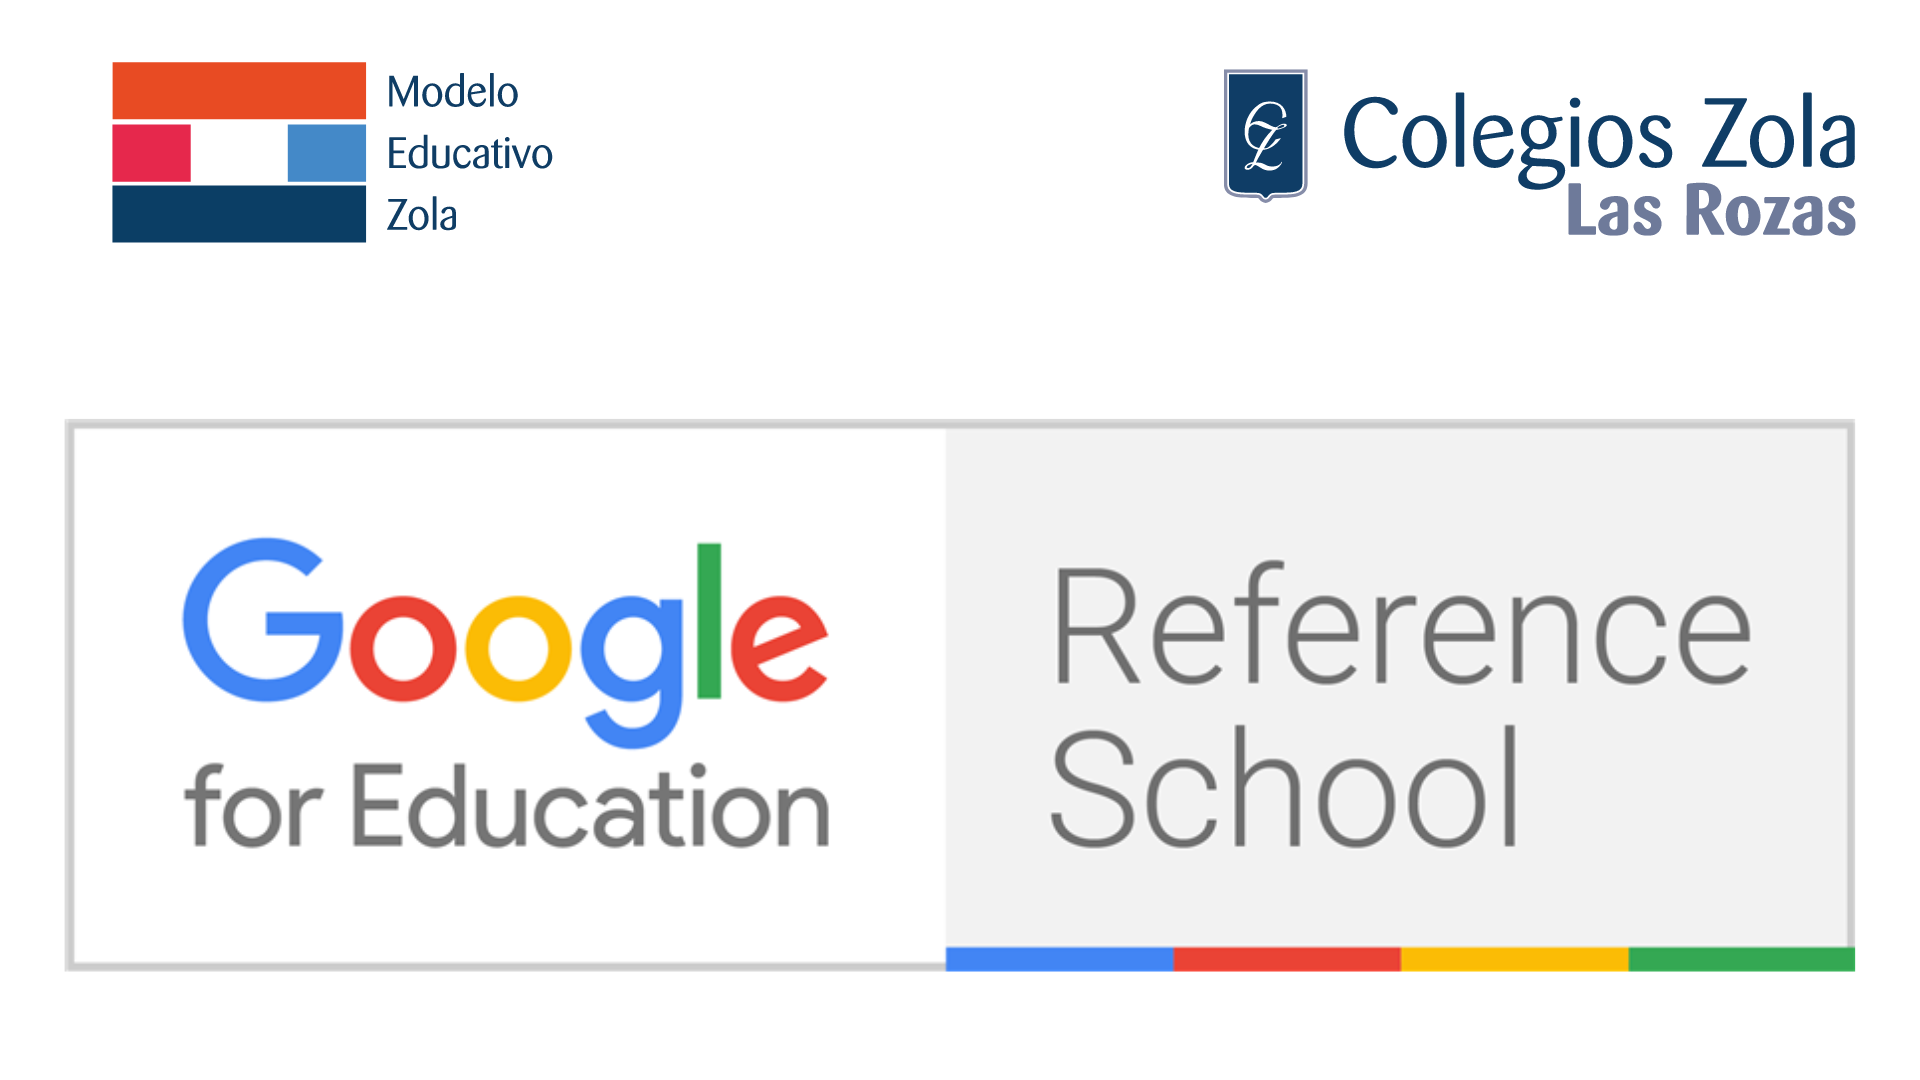 El Colegio Zola Las Rozas: pionero en innovación educativa al convertirse en «Google Reference School»